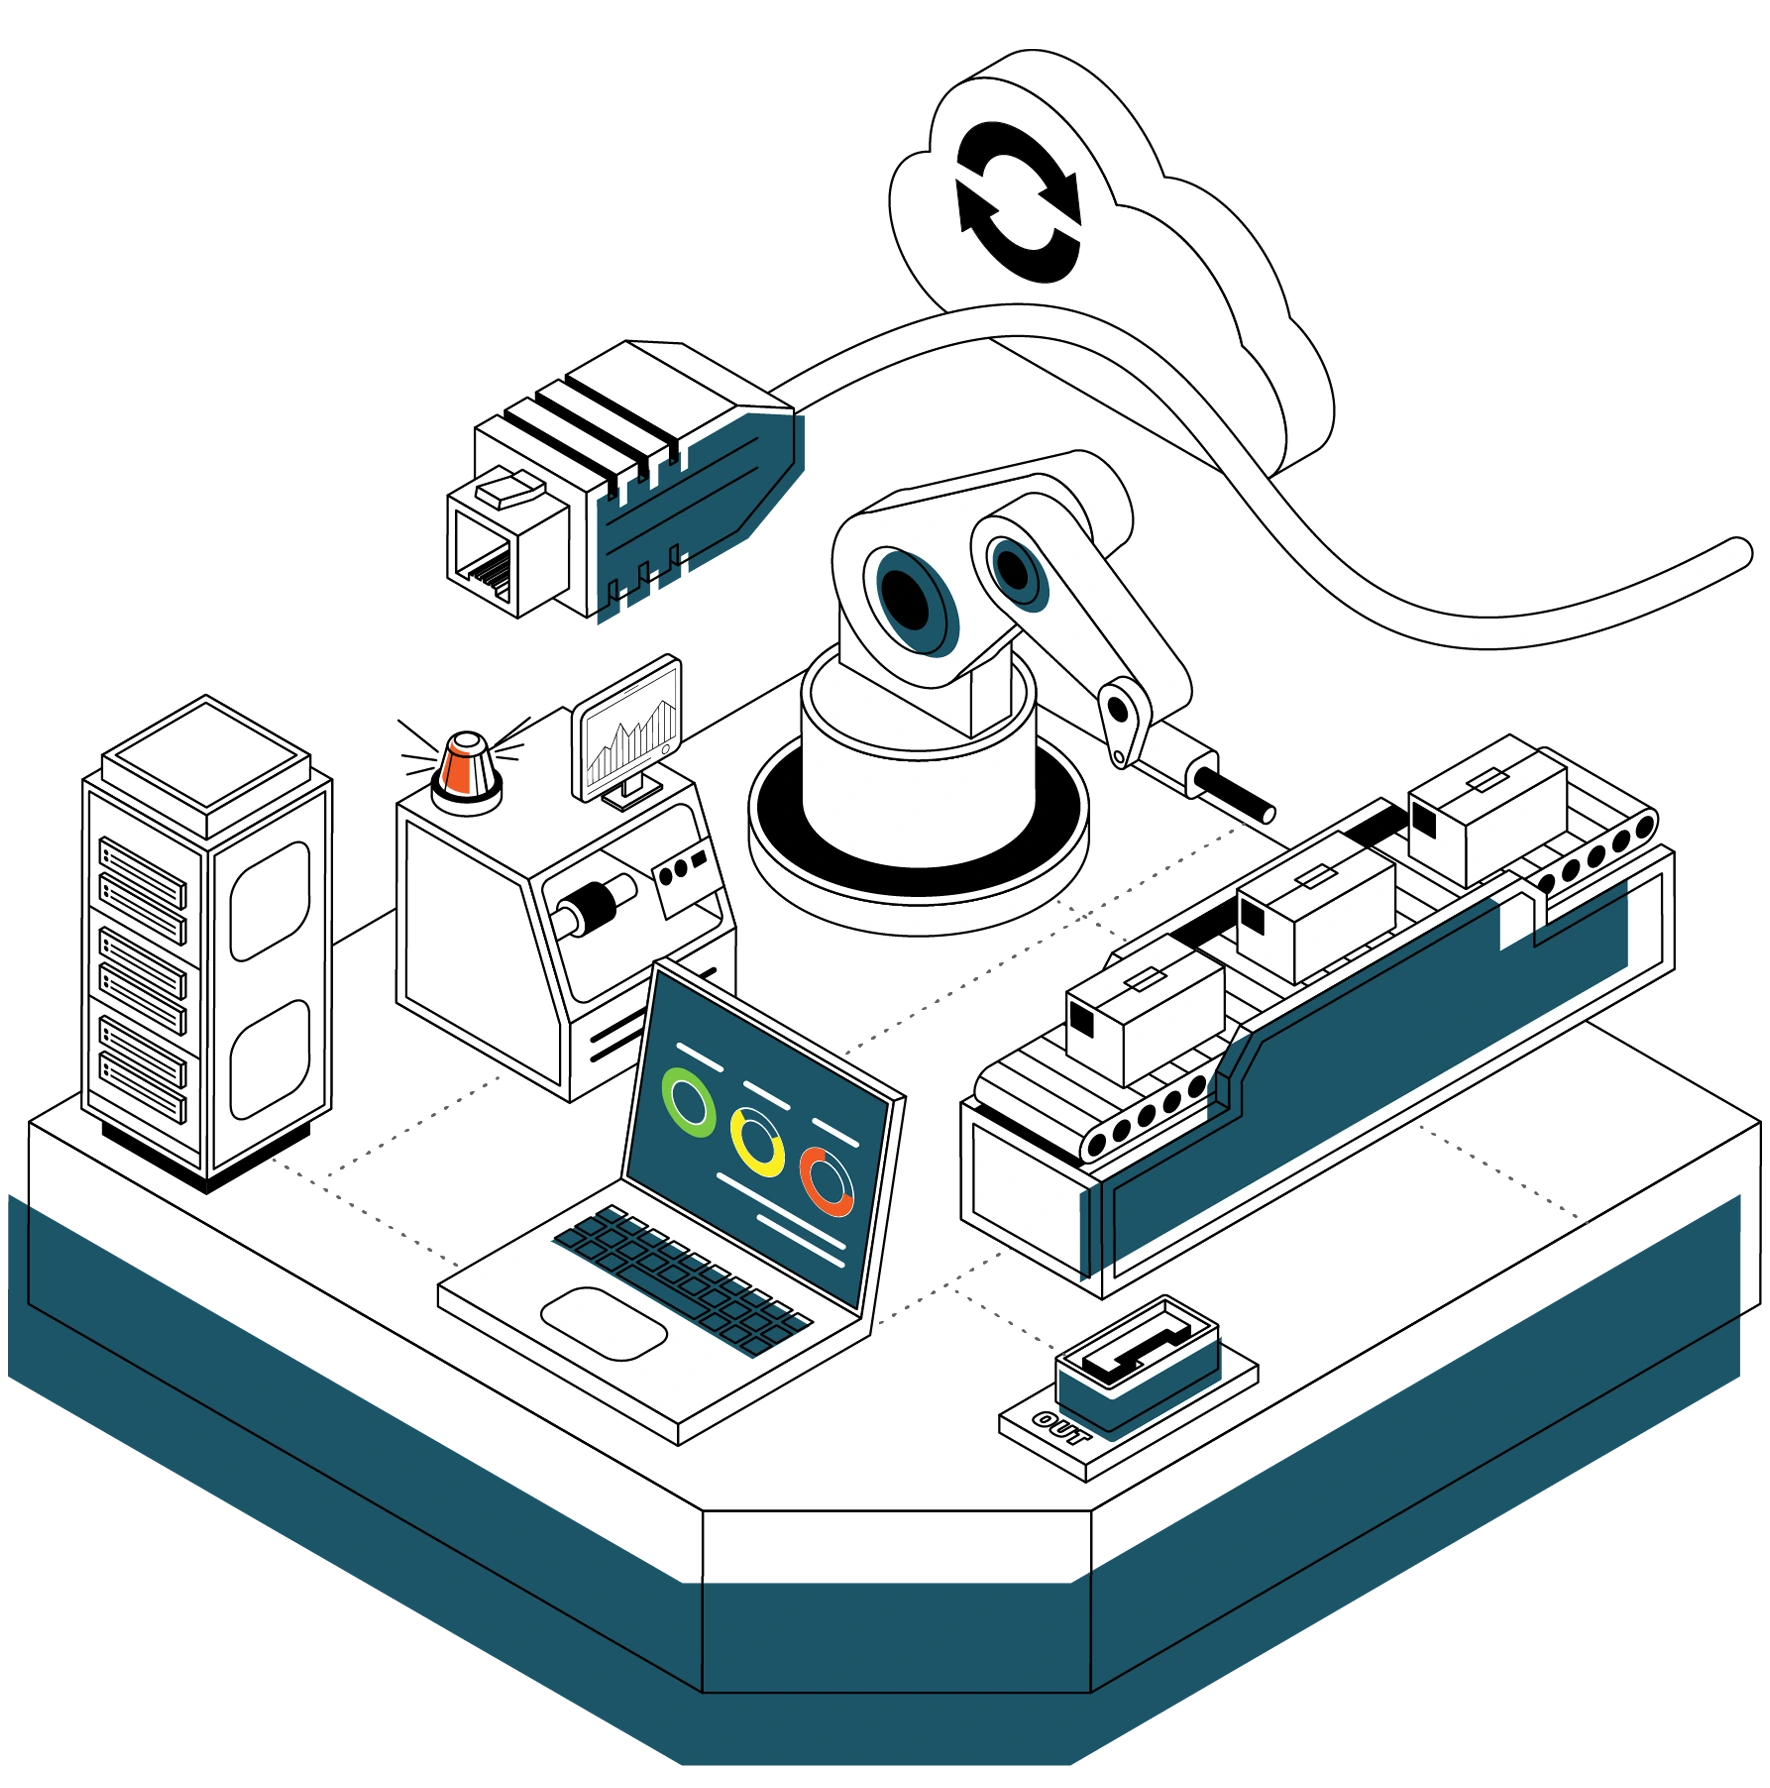 Erfolgreiche Digitalisierung im Maschinenbau bedeutet Vernetzung Server und Systemen aus dem Bereich der IT mit verschiedensten Maschinenprotokolle aus der OT zu einer sicheren Monitoring Lösung.